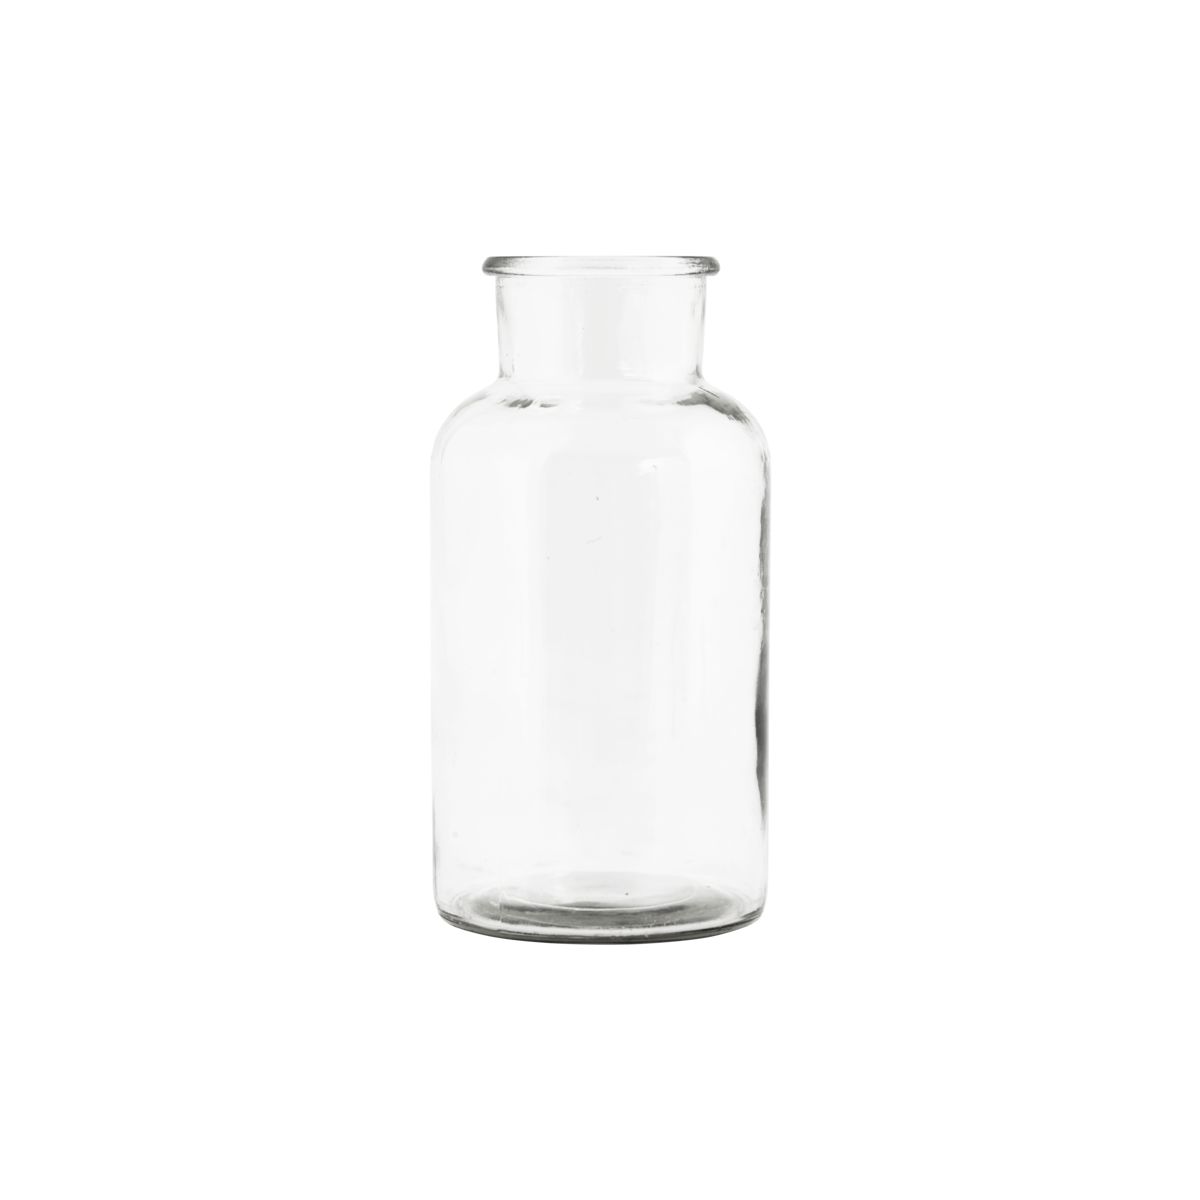 House Doctor - Vas, Jar, Klar, Ø 8 Cm